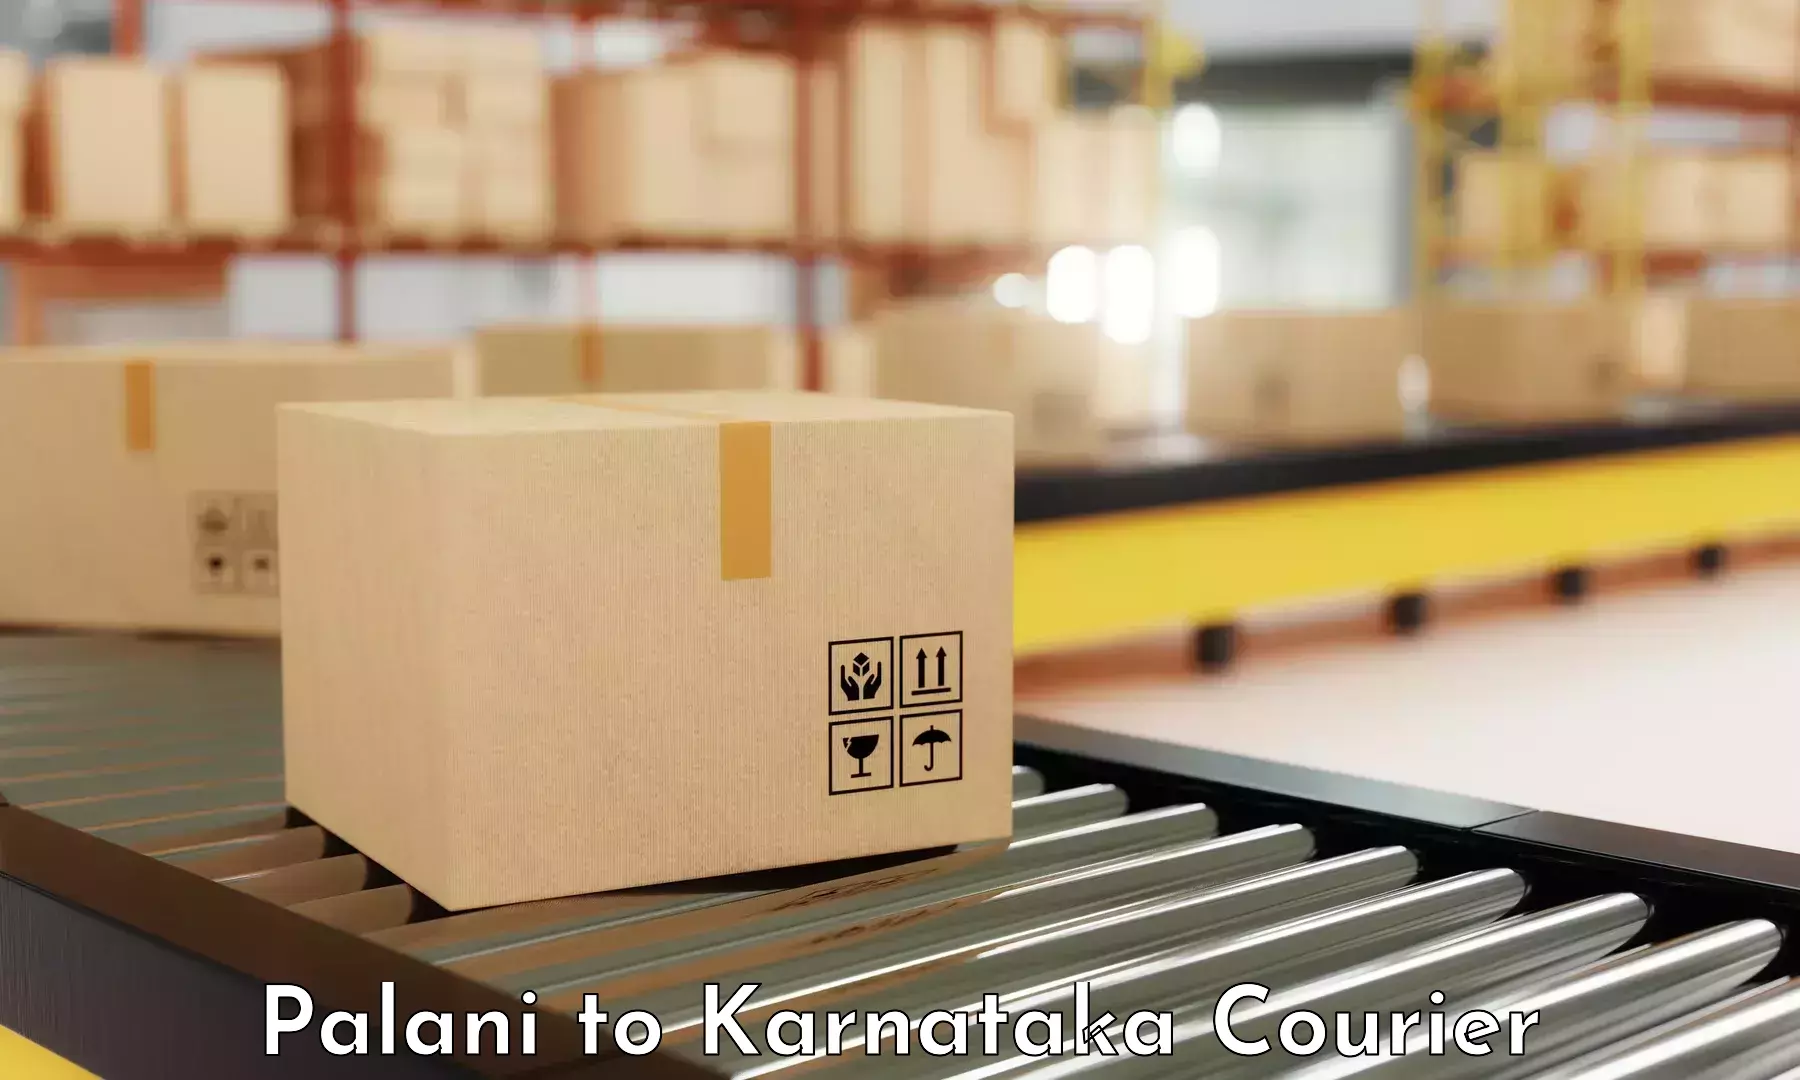 Courier service innovation Palani to Koppal